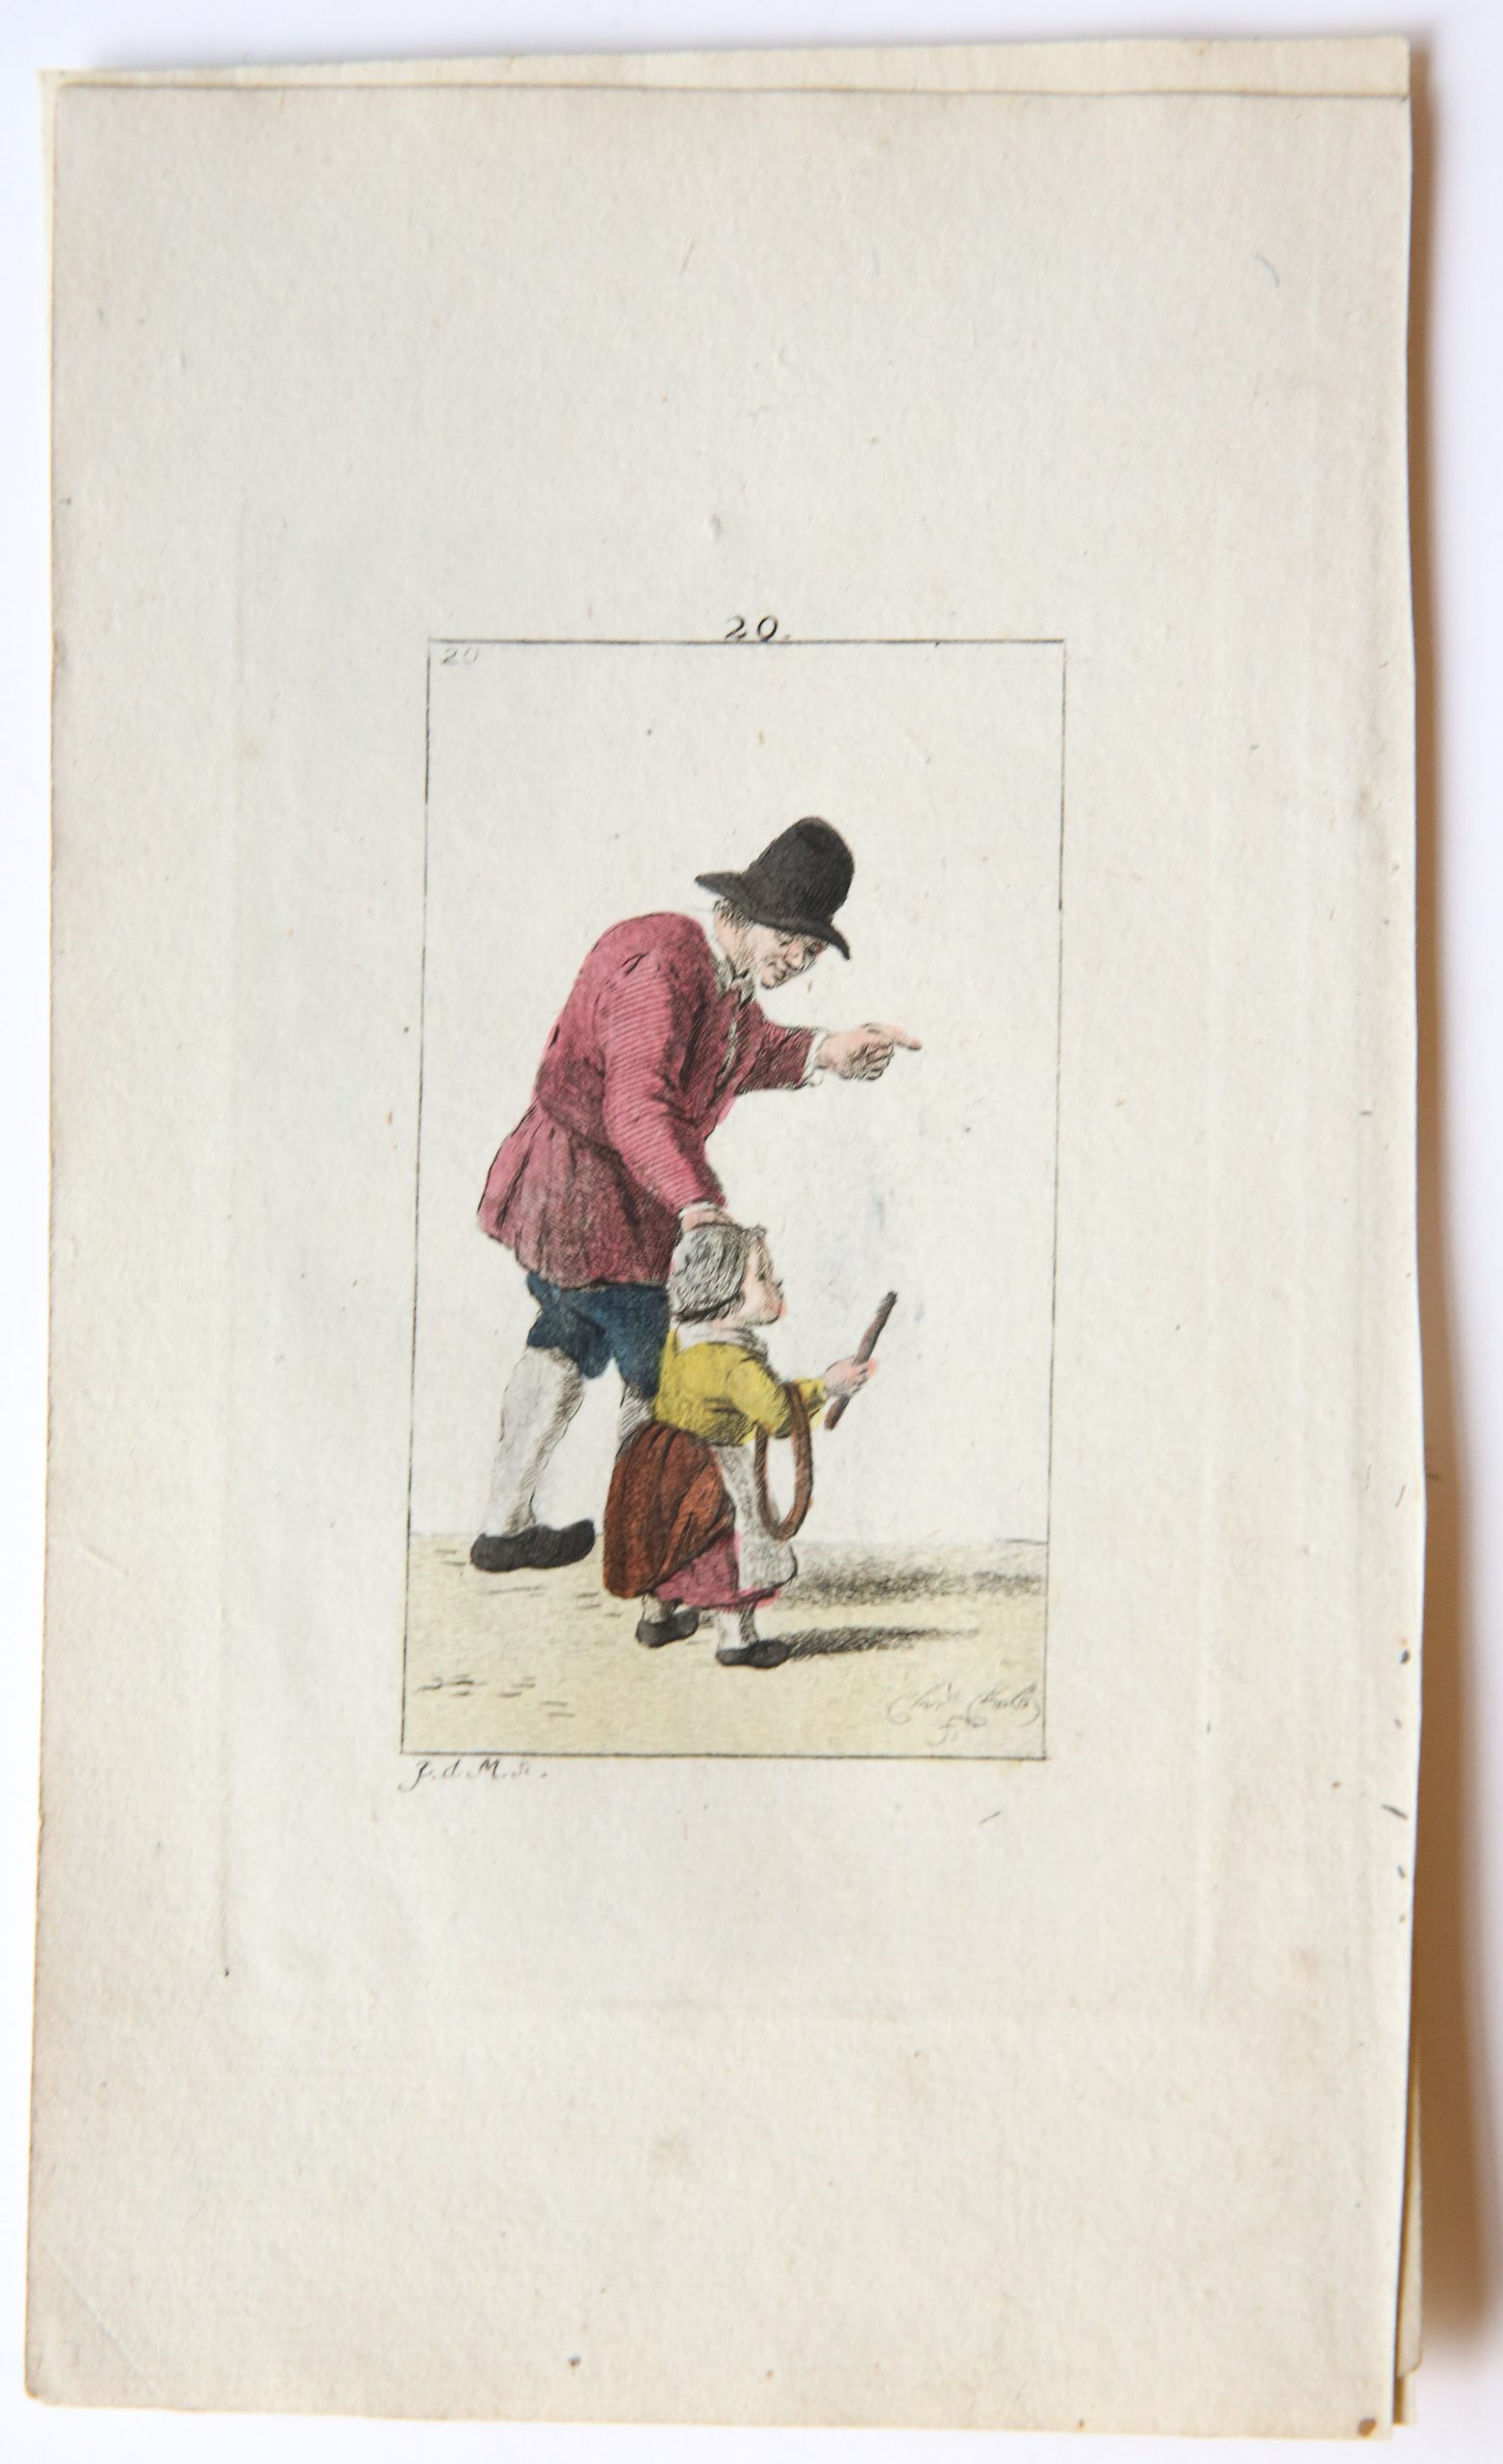 Handgekleurde ets/Handcolored etching: Man with hat and child [plate 20 from "Zinspelende gedigjes, op de geestige printjes ge-etst door Pieter de Mare...", 1793].